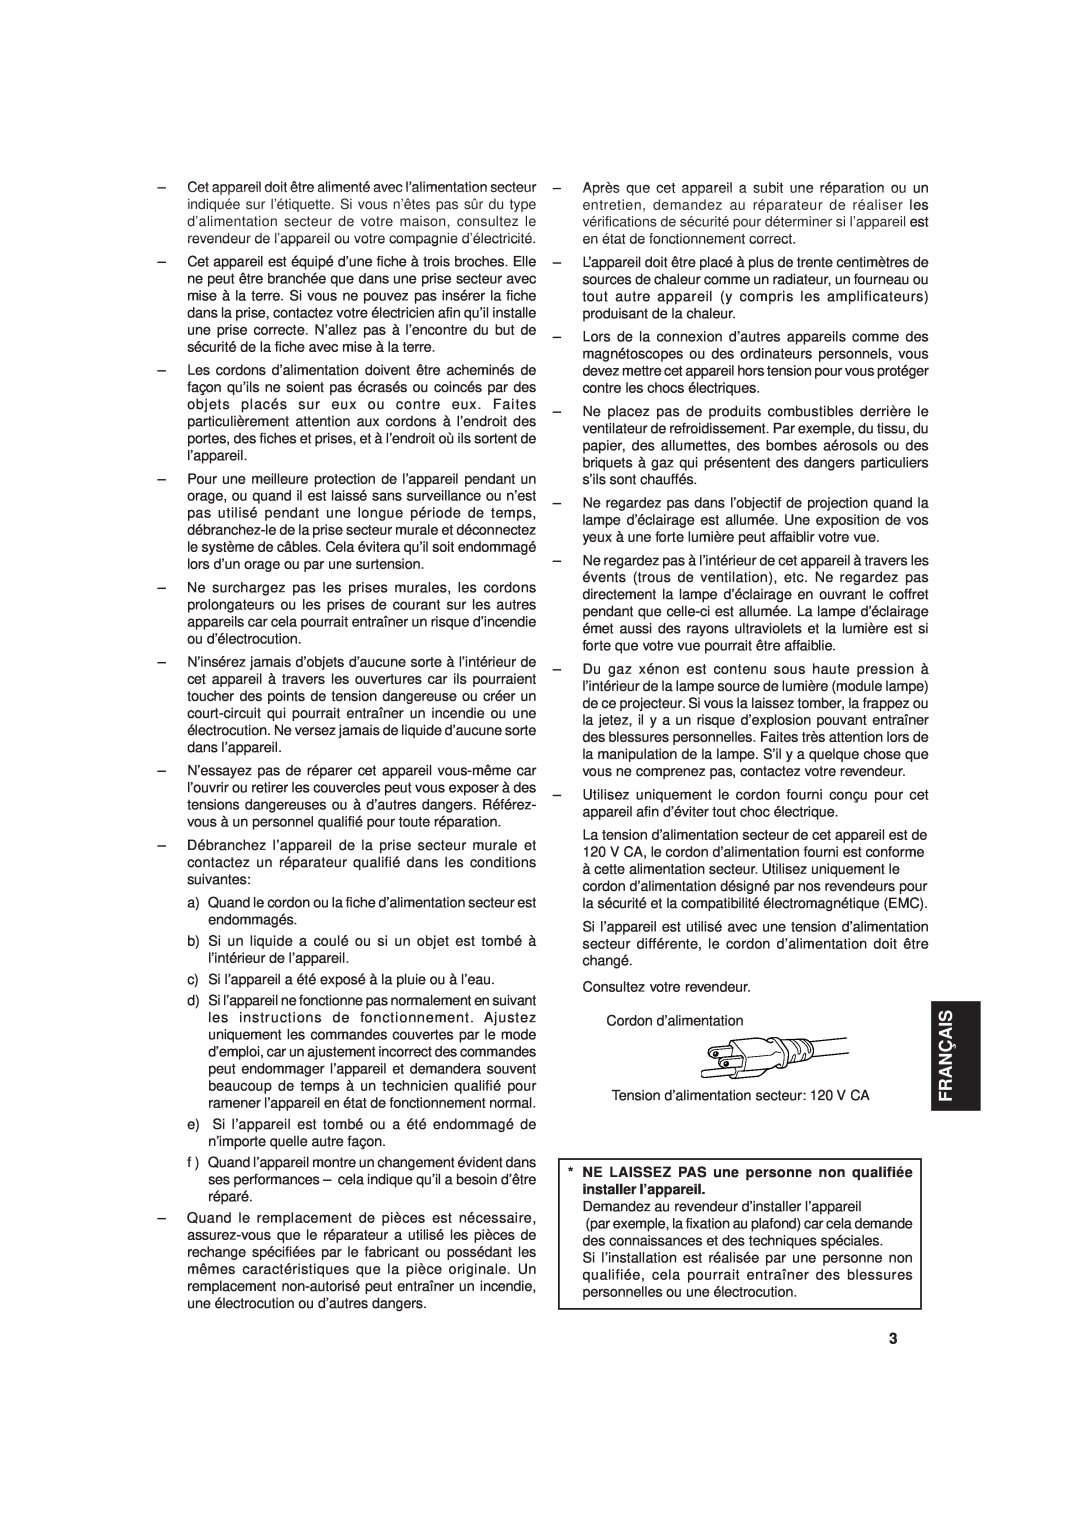 JVC DLA-G20U manual Français, NE LAISSEZ PAS une personne non qualifiée installer l’appareil 